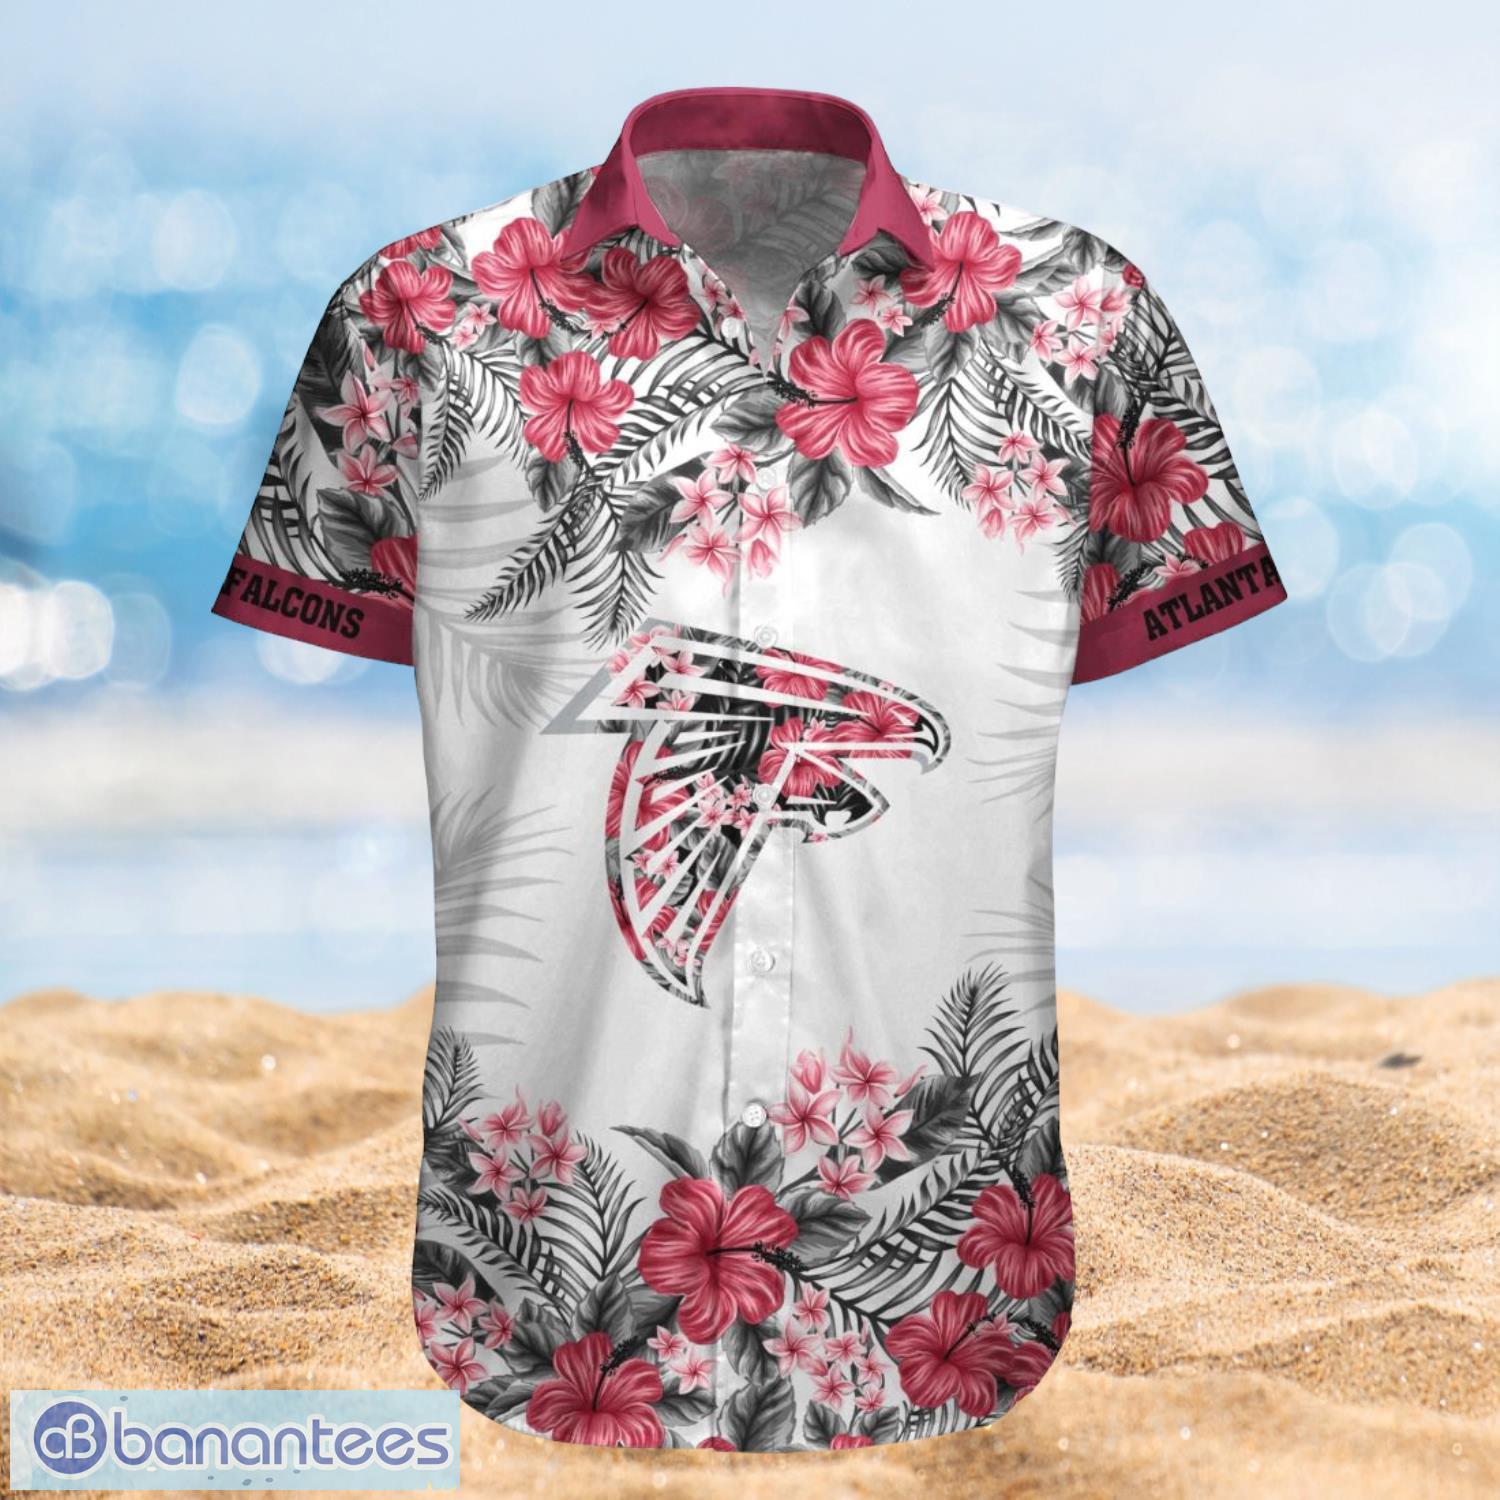 Atlanta Falcons Summer Beach Shirt and Shorts Full Over Print Product Photo 1